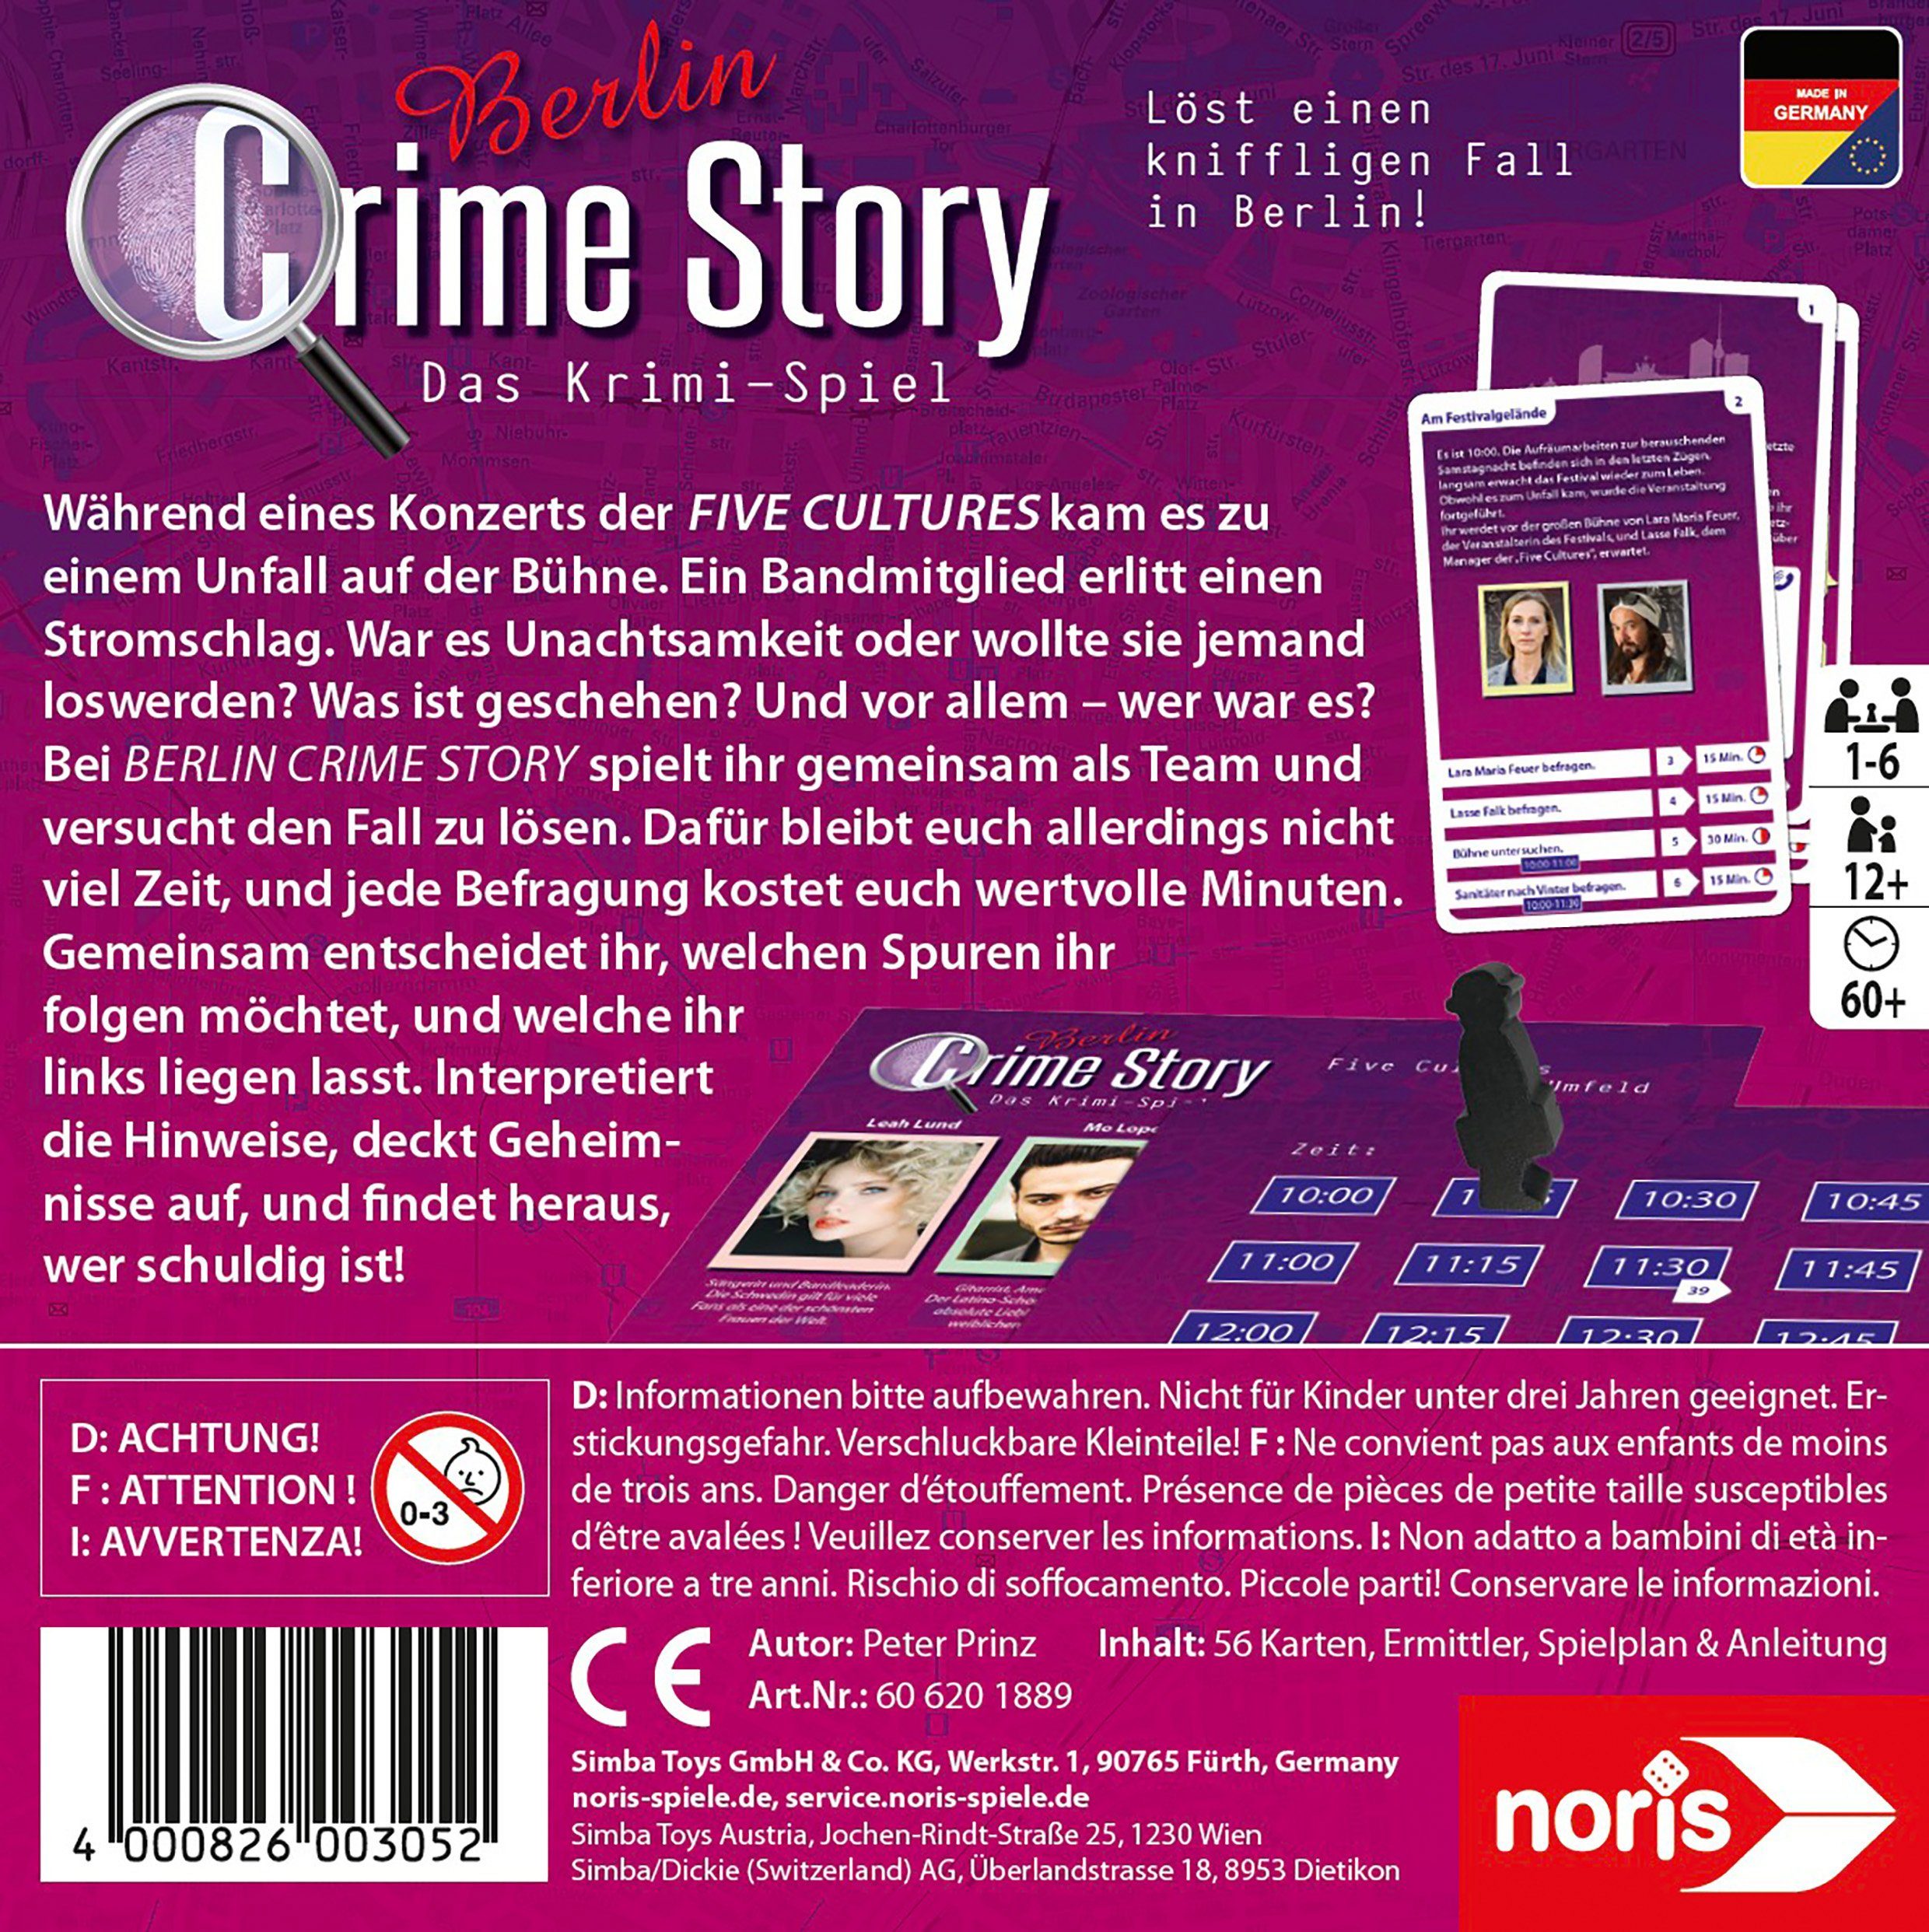 Noris Spiel, Crime Story - Made Germany in Berlin